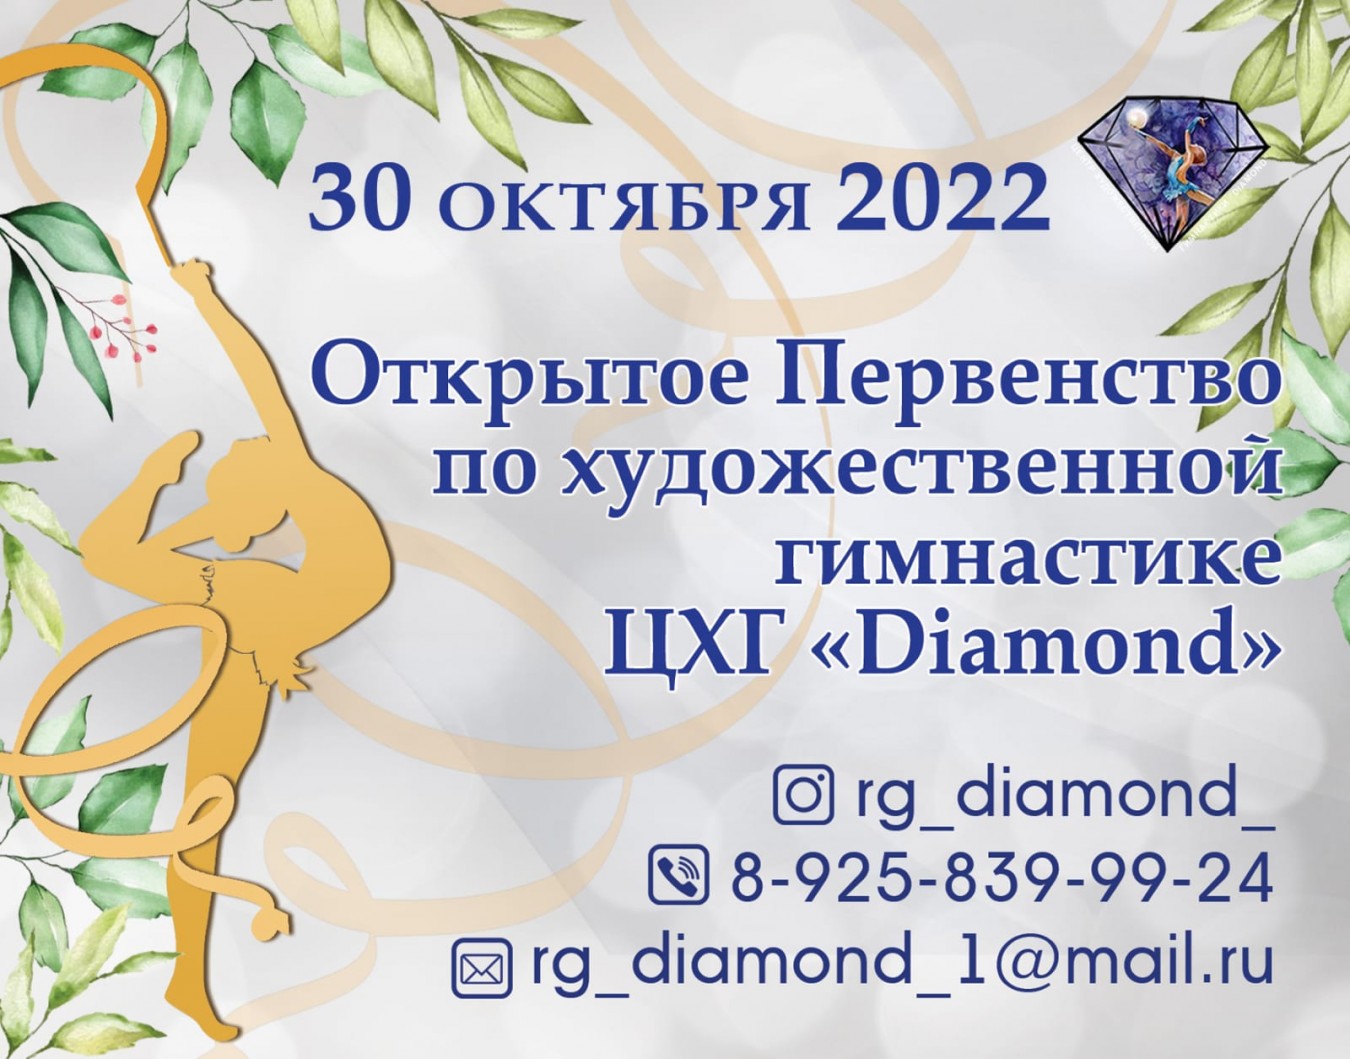 Открытое первенство по художественной гимнастике ЦХГ «Diamond», 30.10.2022, Москва